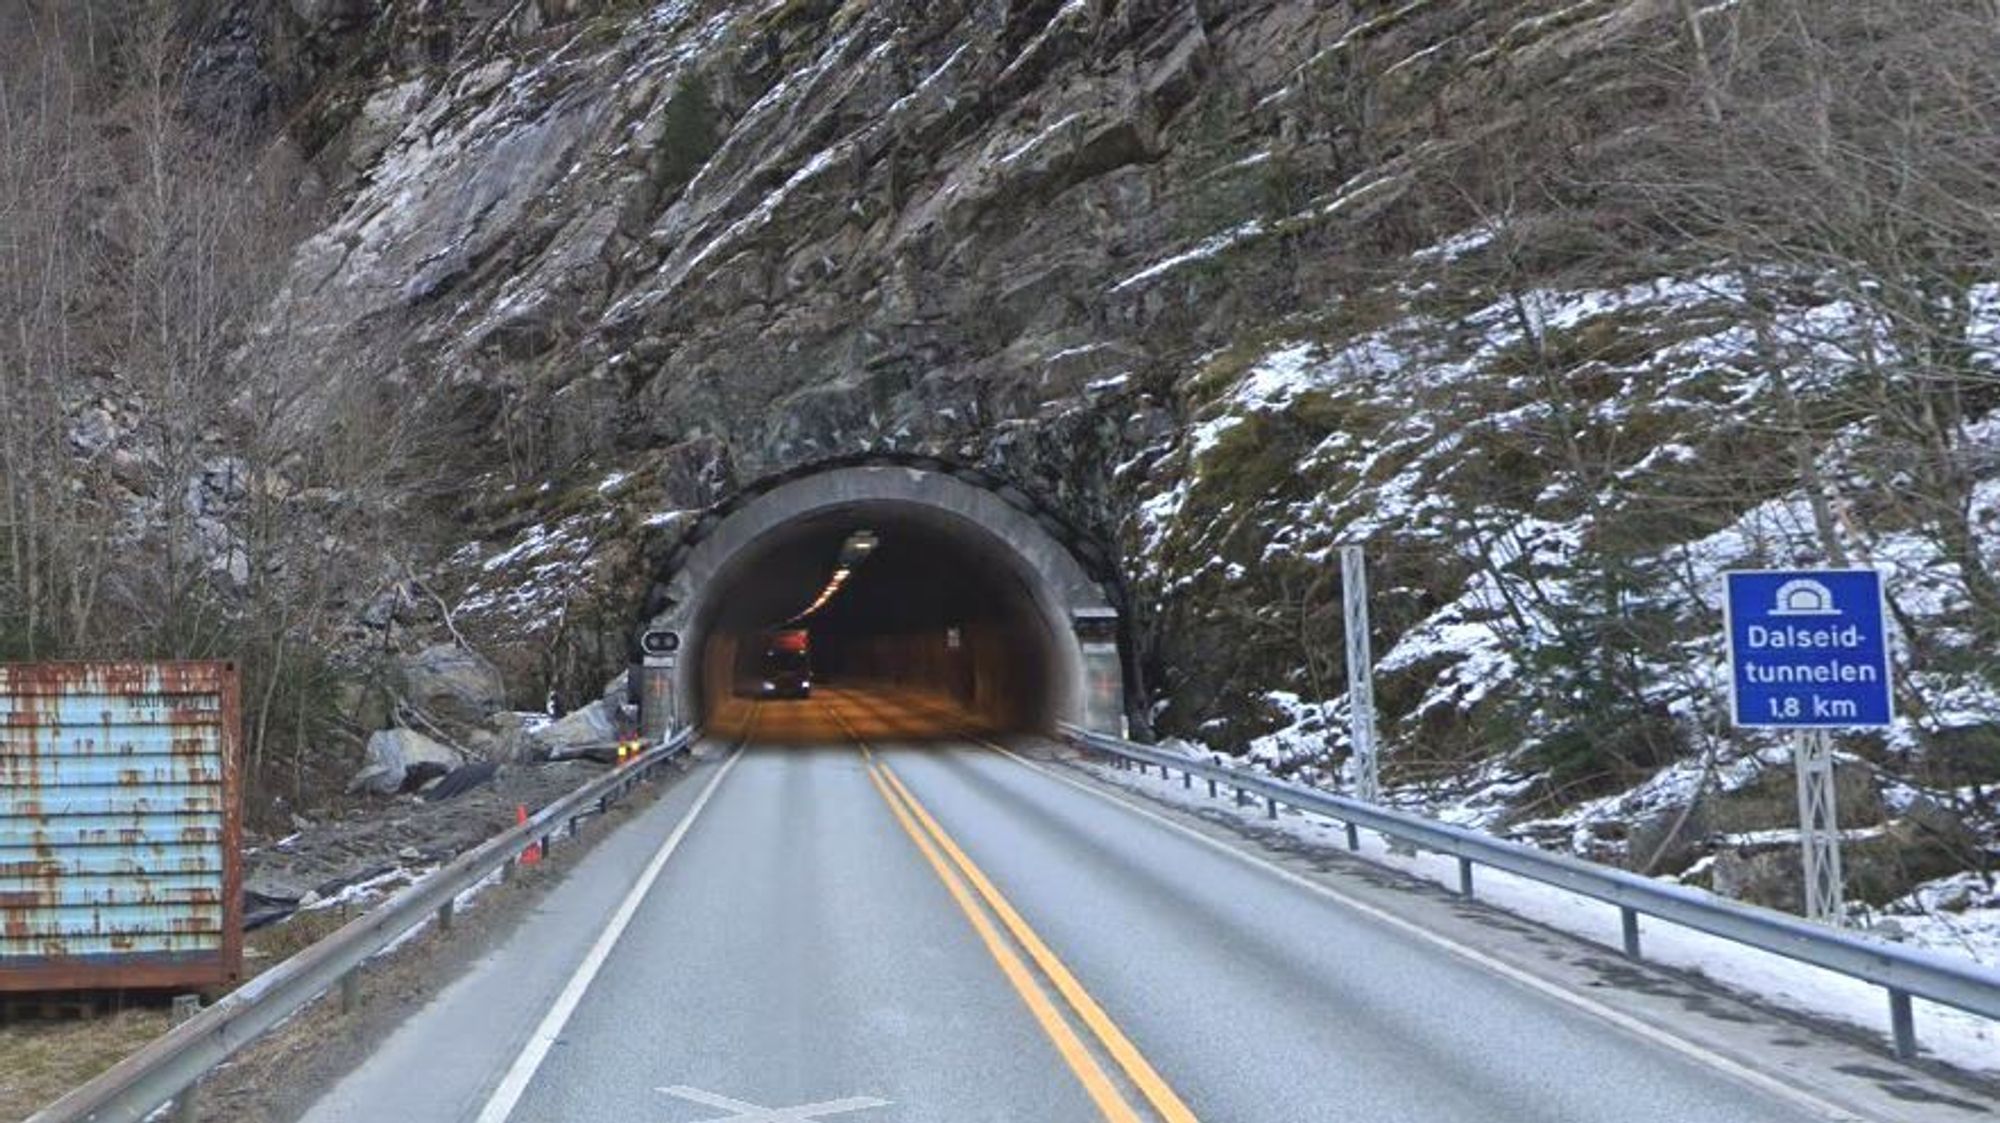 Dalseidtunnelen, som ligger i Vaksdal kommune i Vestland, er en av tunnelene som skal oppgraderes. Tunnelen går gjennom Dalseidnova og Middagskaret i Bolstadfjorden, og er 1809 meter lang.